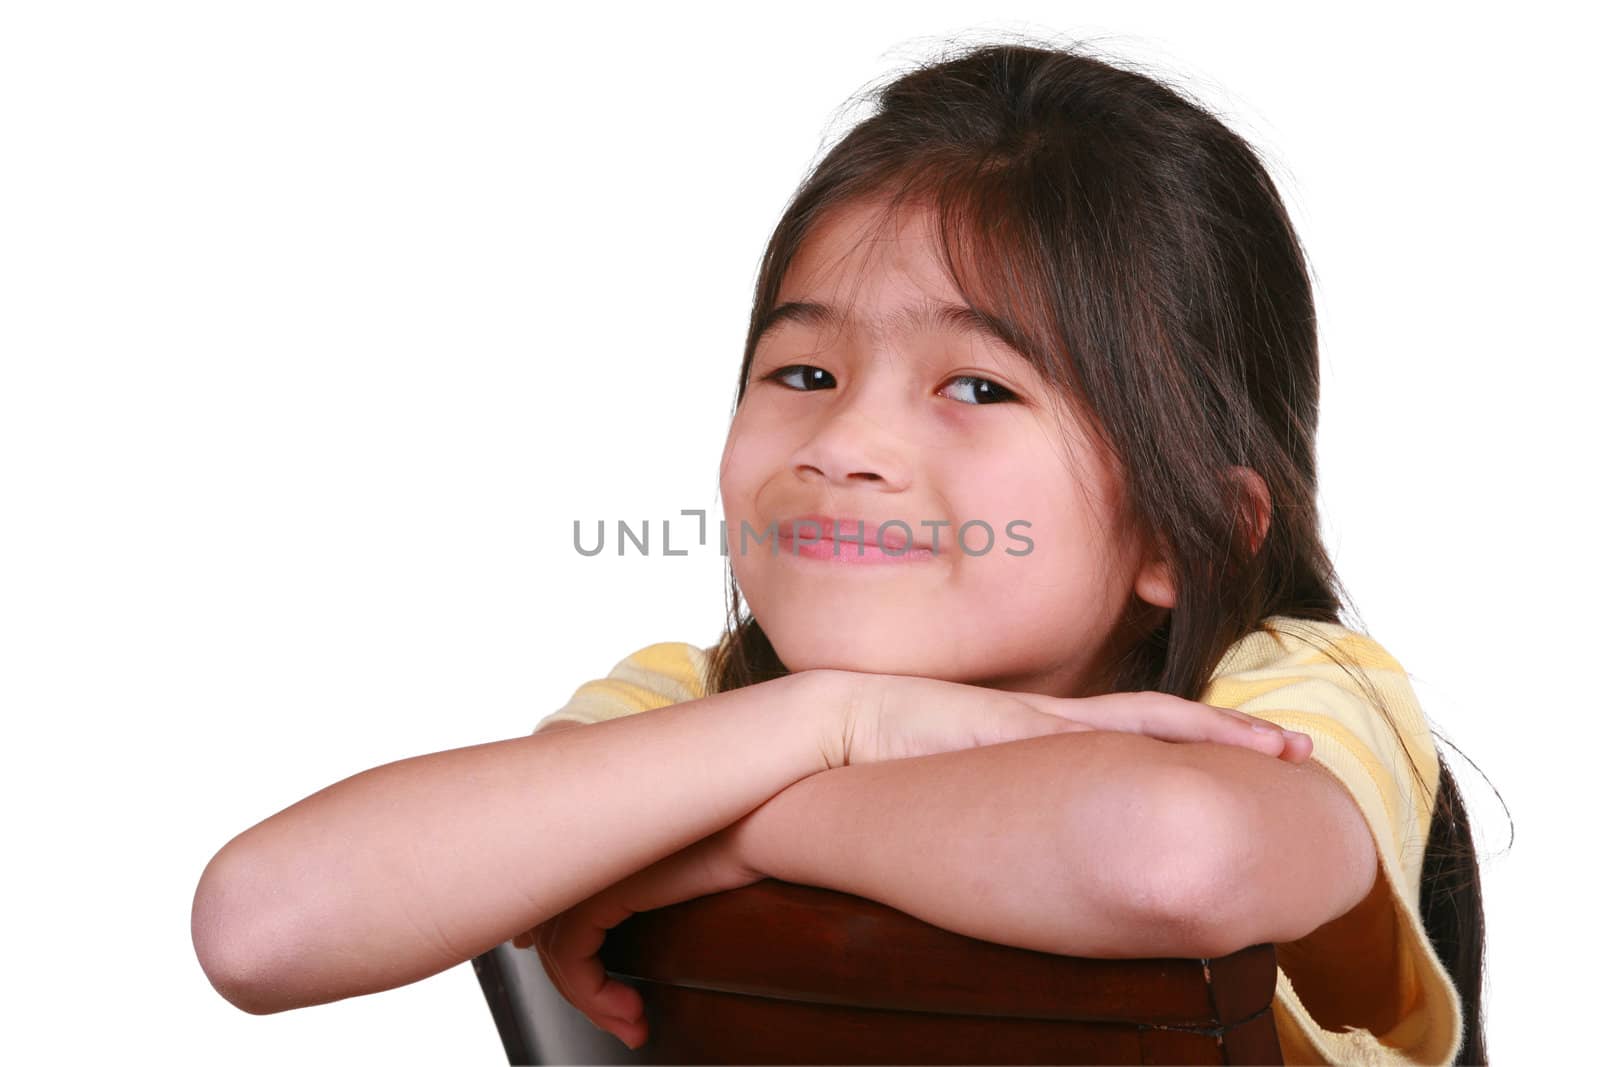 Beautiful little girl sitting on chair smiling, part Asian - Scandinavian descent